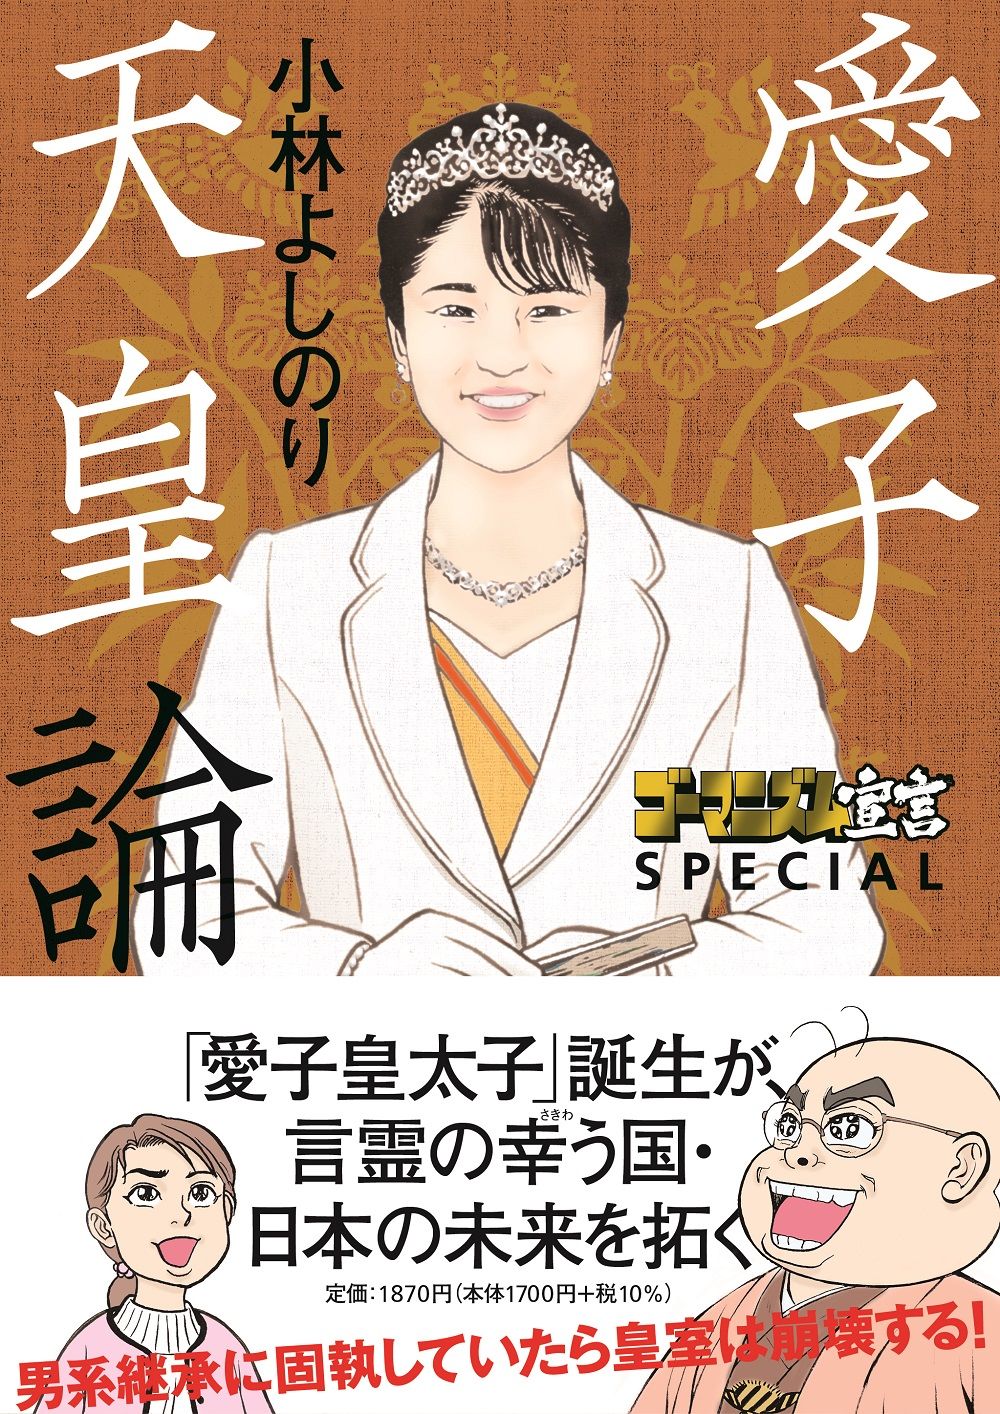 مانغا كوباياشي لعام 2023 بعنوان ”الأميرة آيكو كإمبراطور“ (بإذن من فوسوشا)